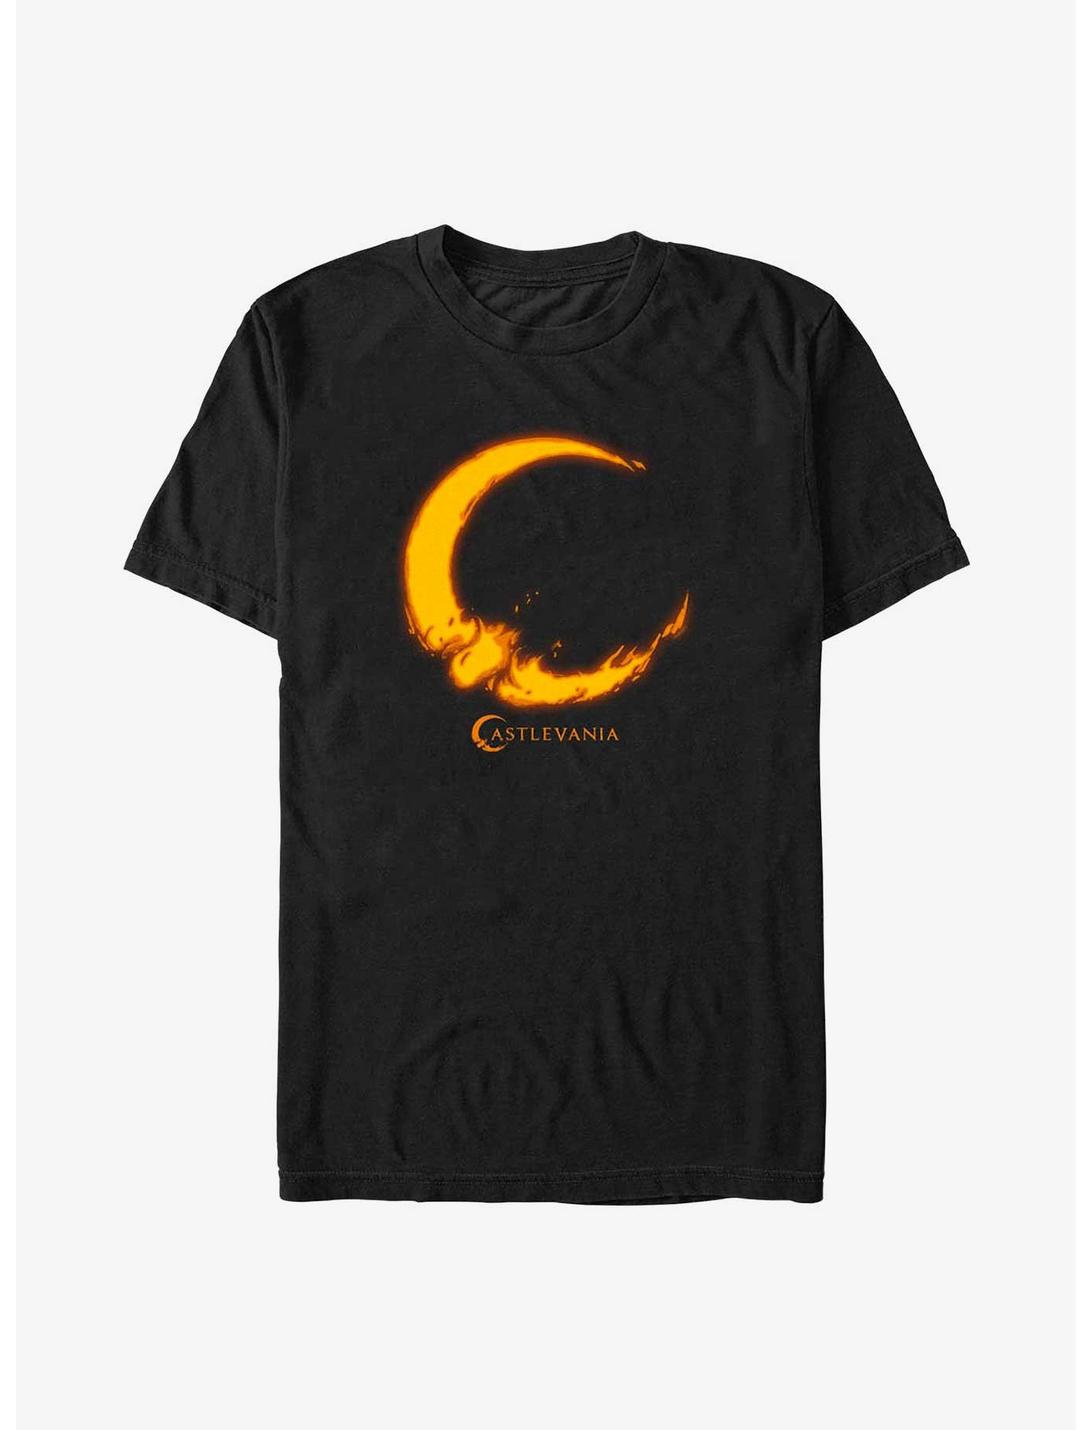 Castlevania Moon Fire T-Shirt, BLACK, hi-res